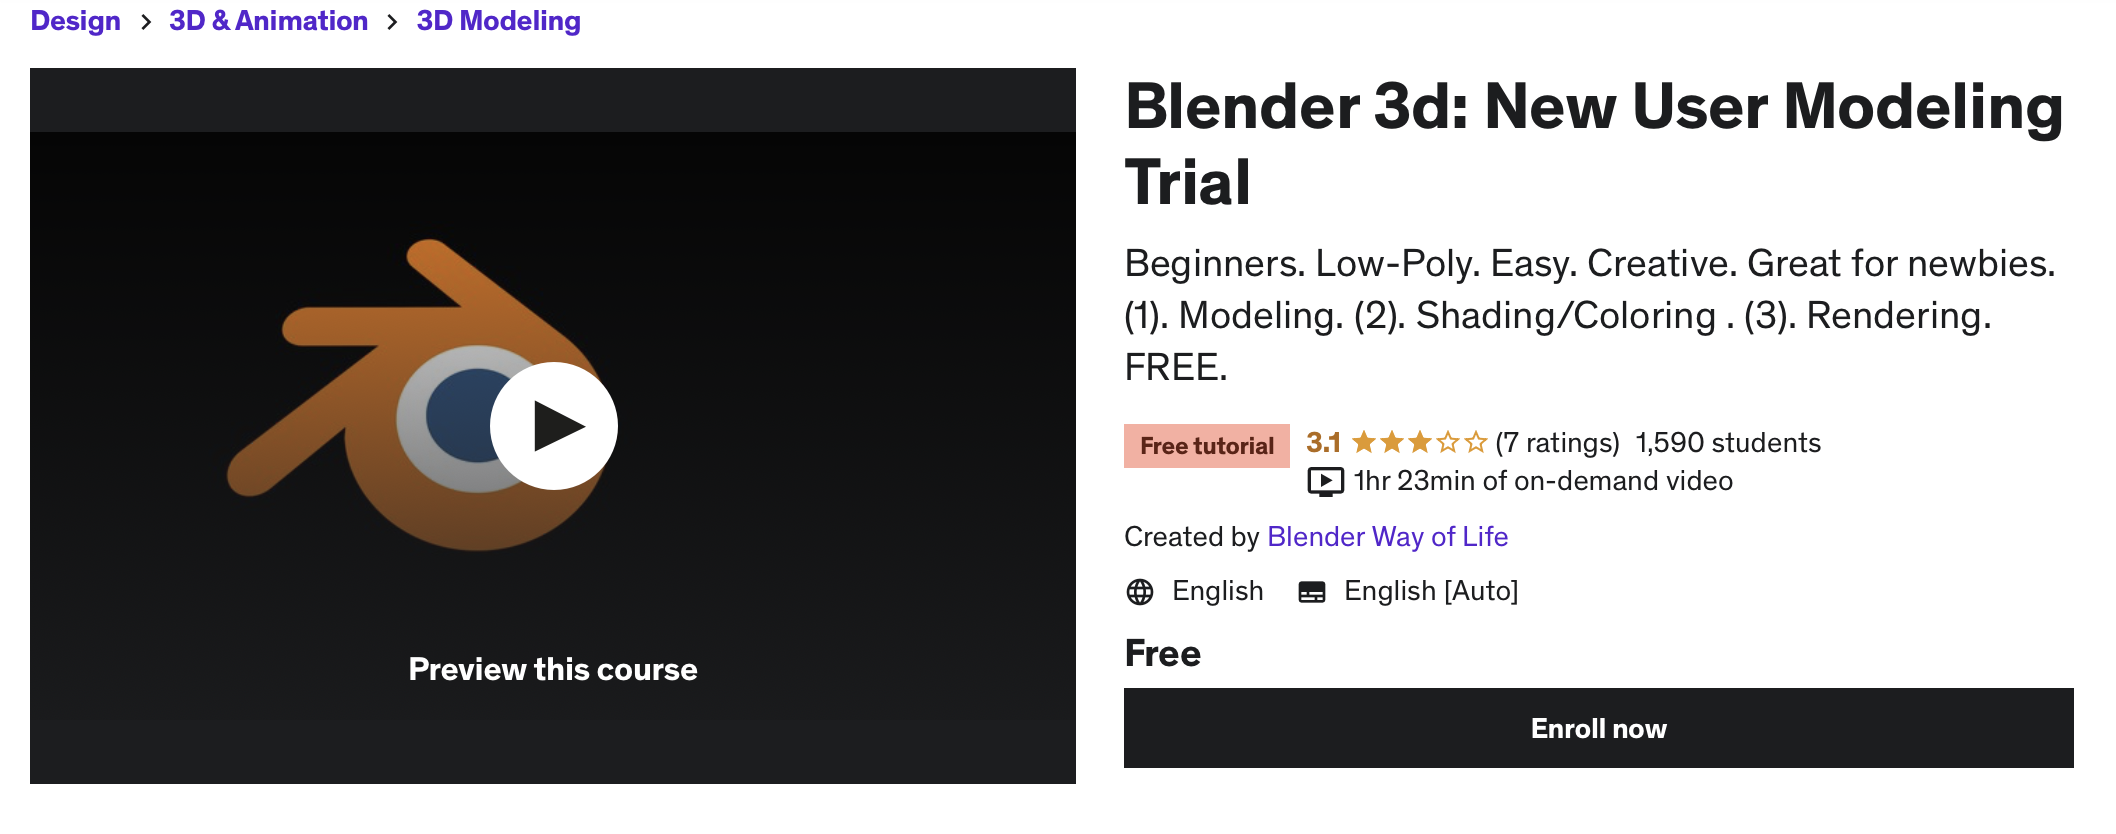 Blender 3D New User Modeling Trial